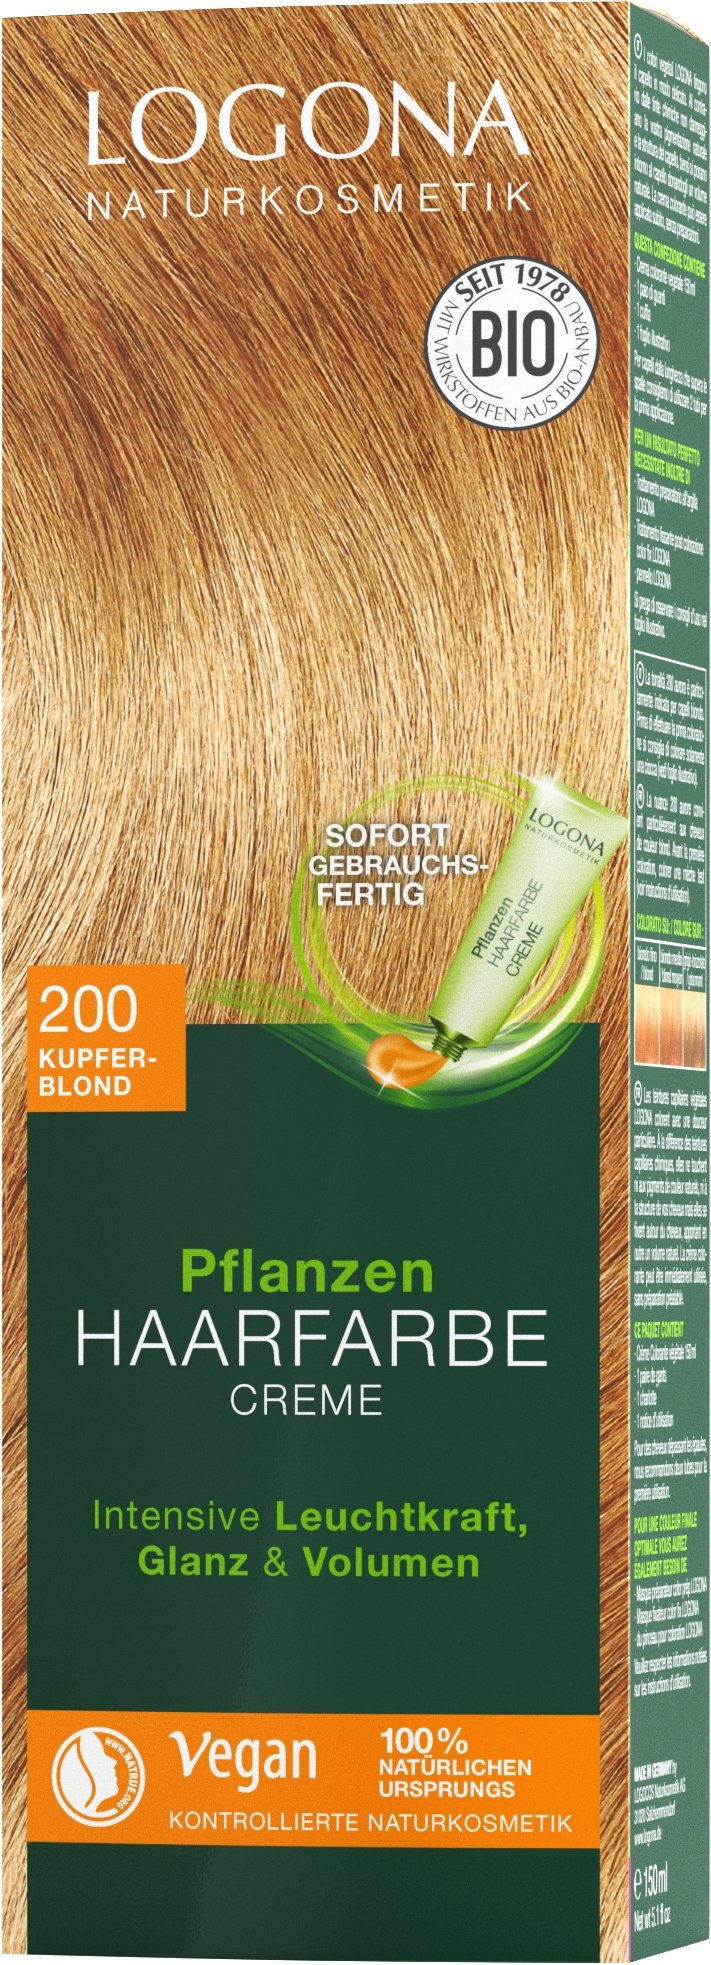 Pflanzen-Haarfarbe Creme Logona | Haarfarben | 200 Kupferblond